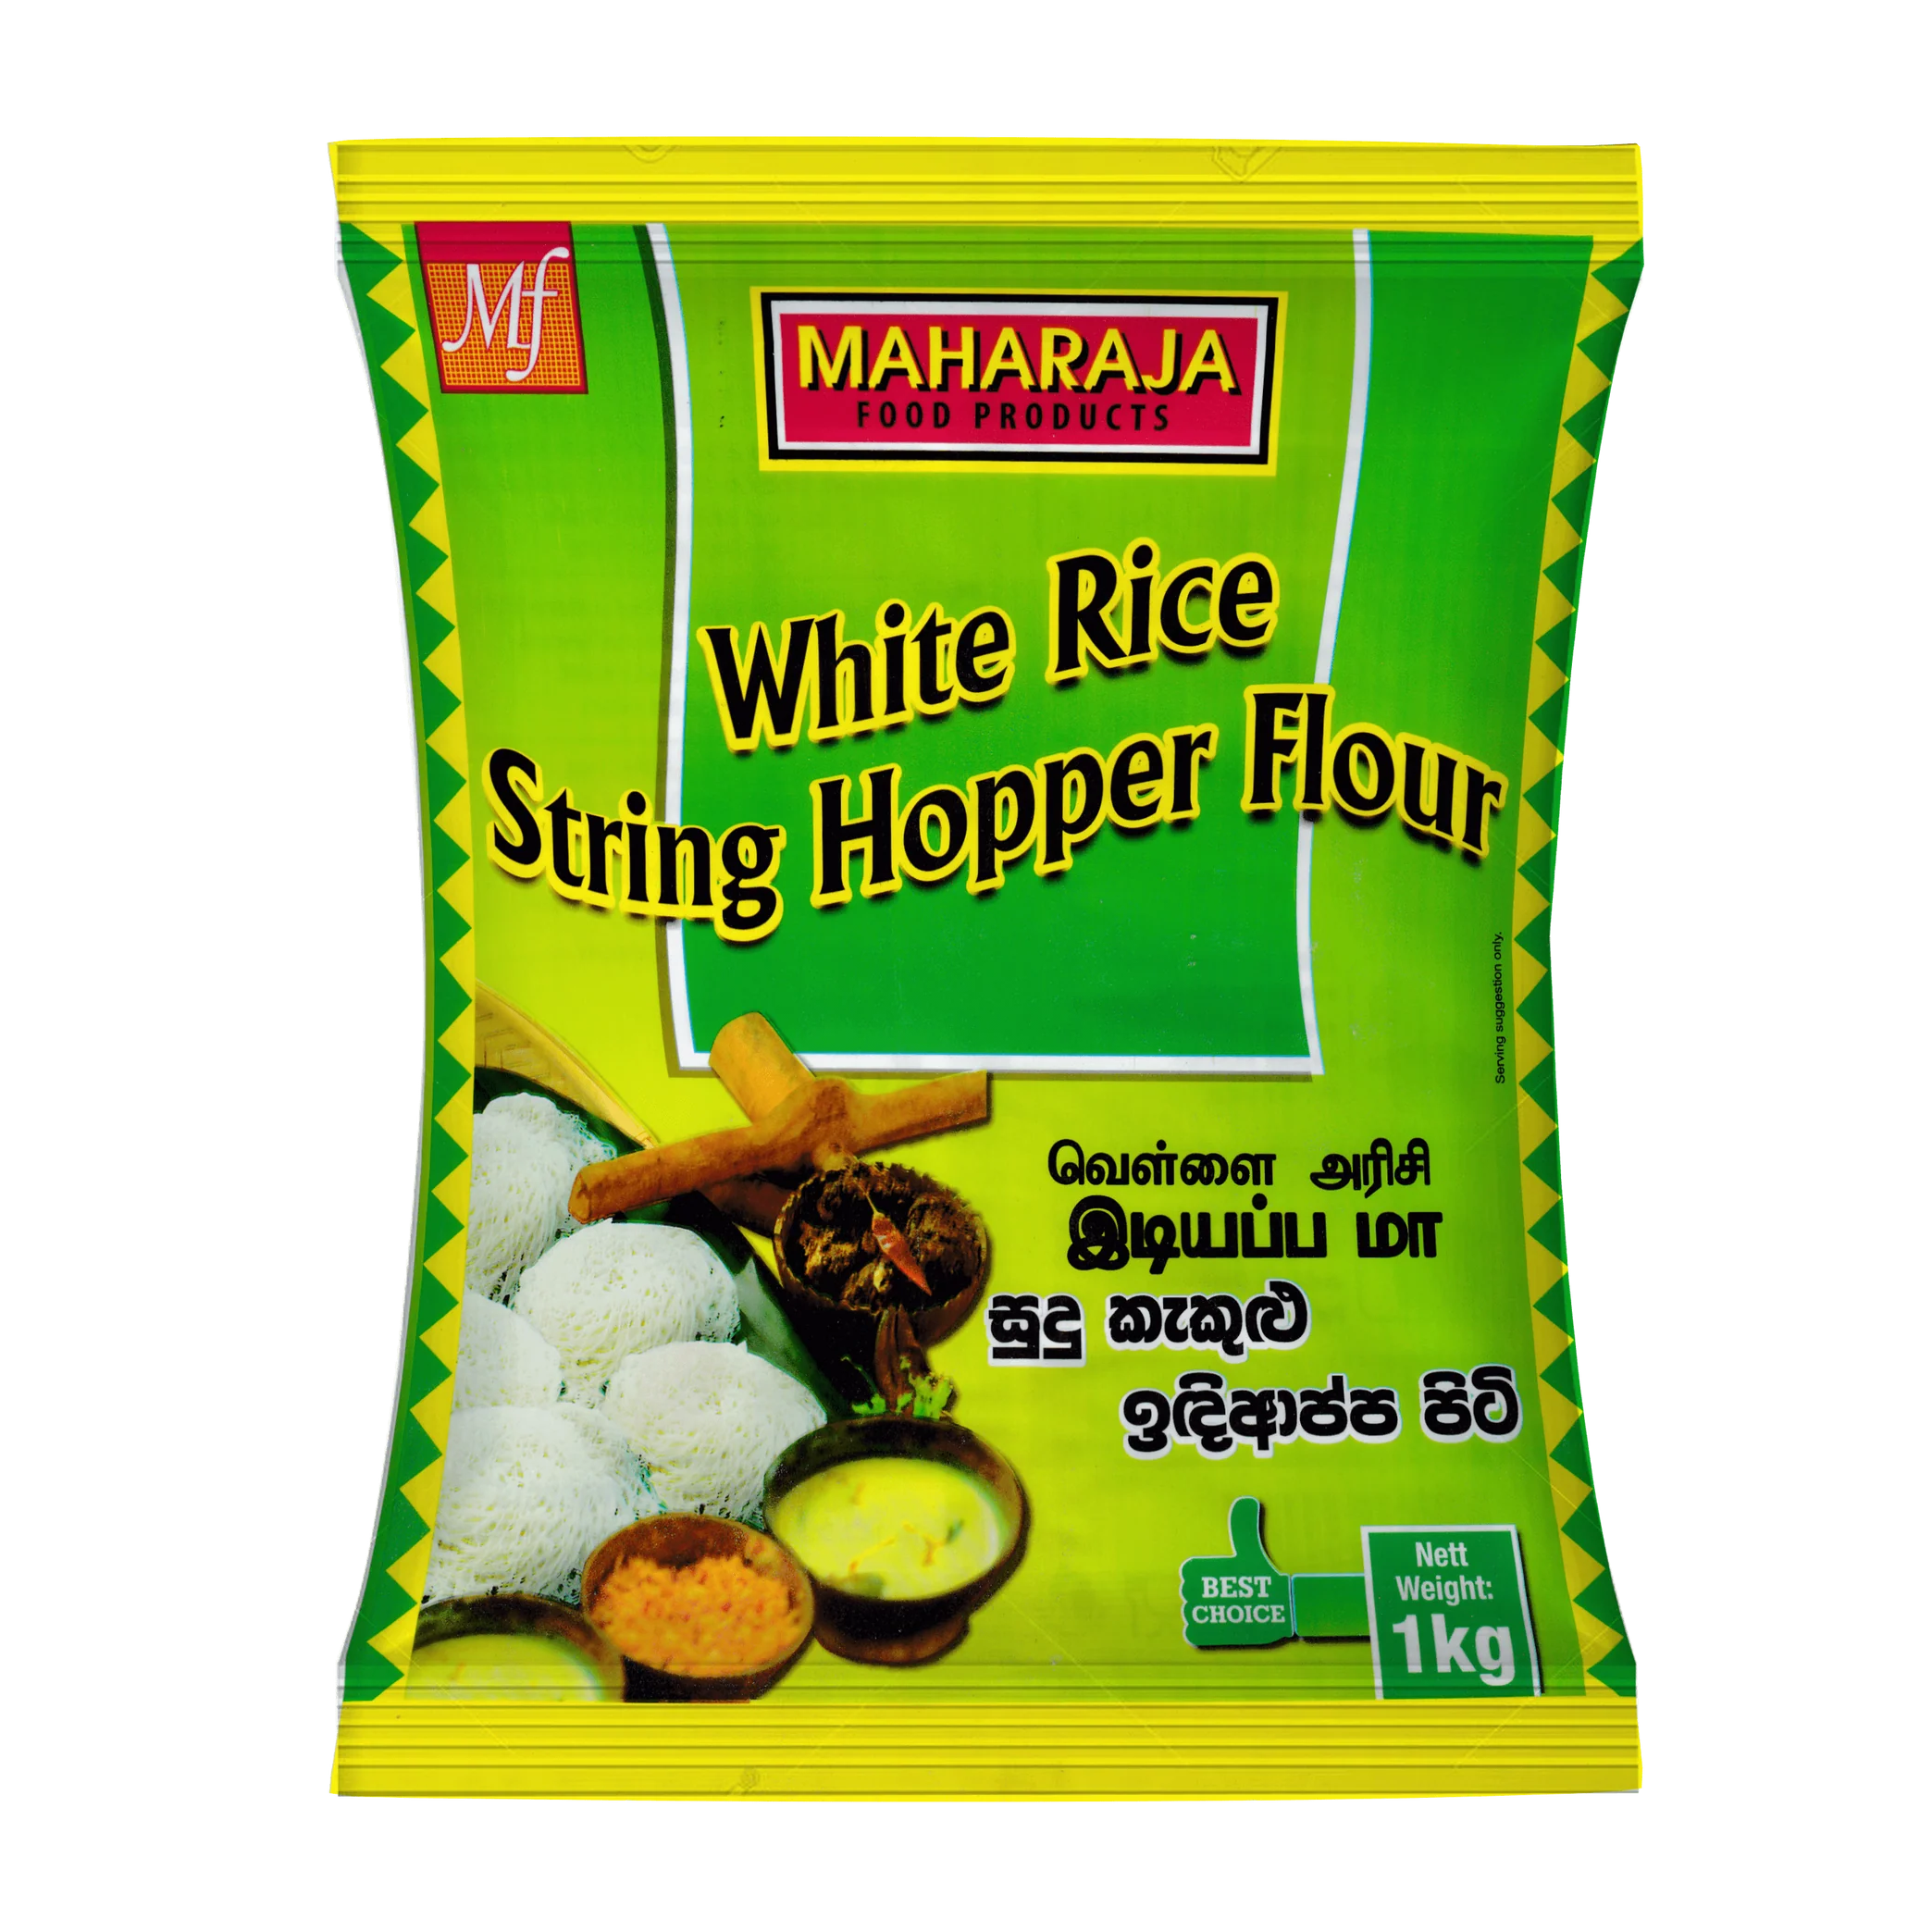 White Rice String Hopper Flour